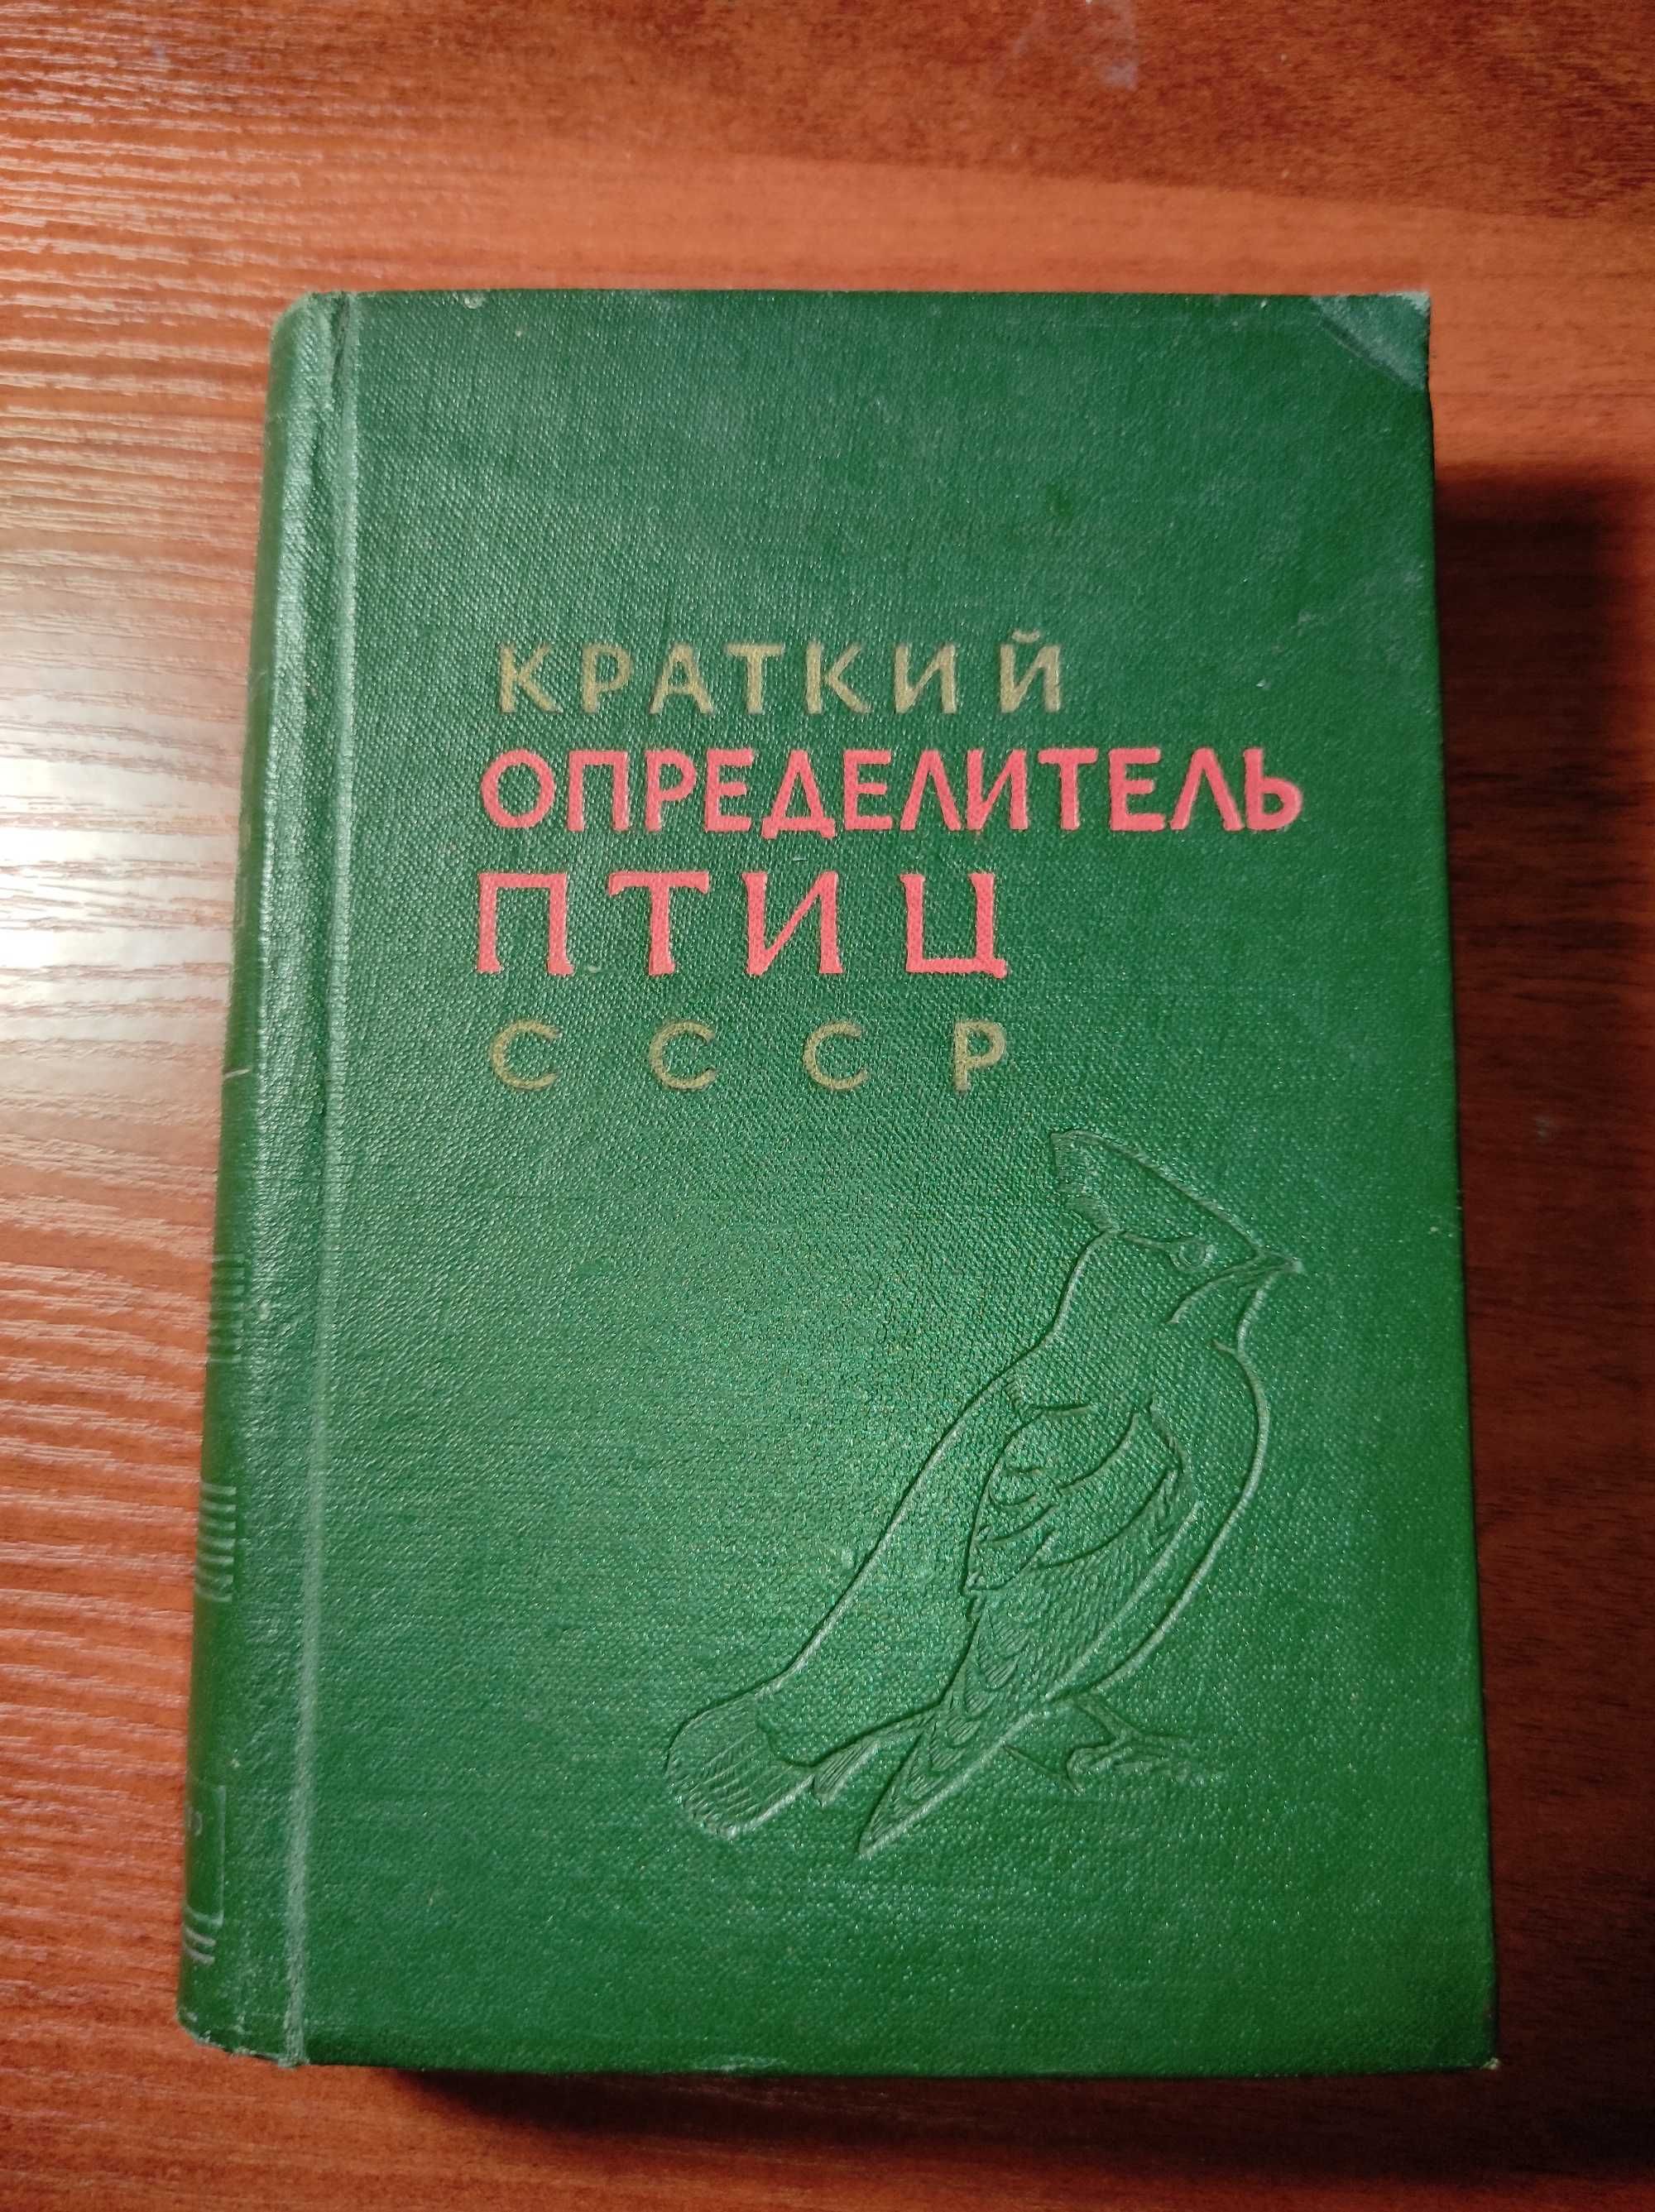 Краткий определитель птиц СССР. А.И. Иванов, Б,К, Штегман 1964г.